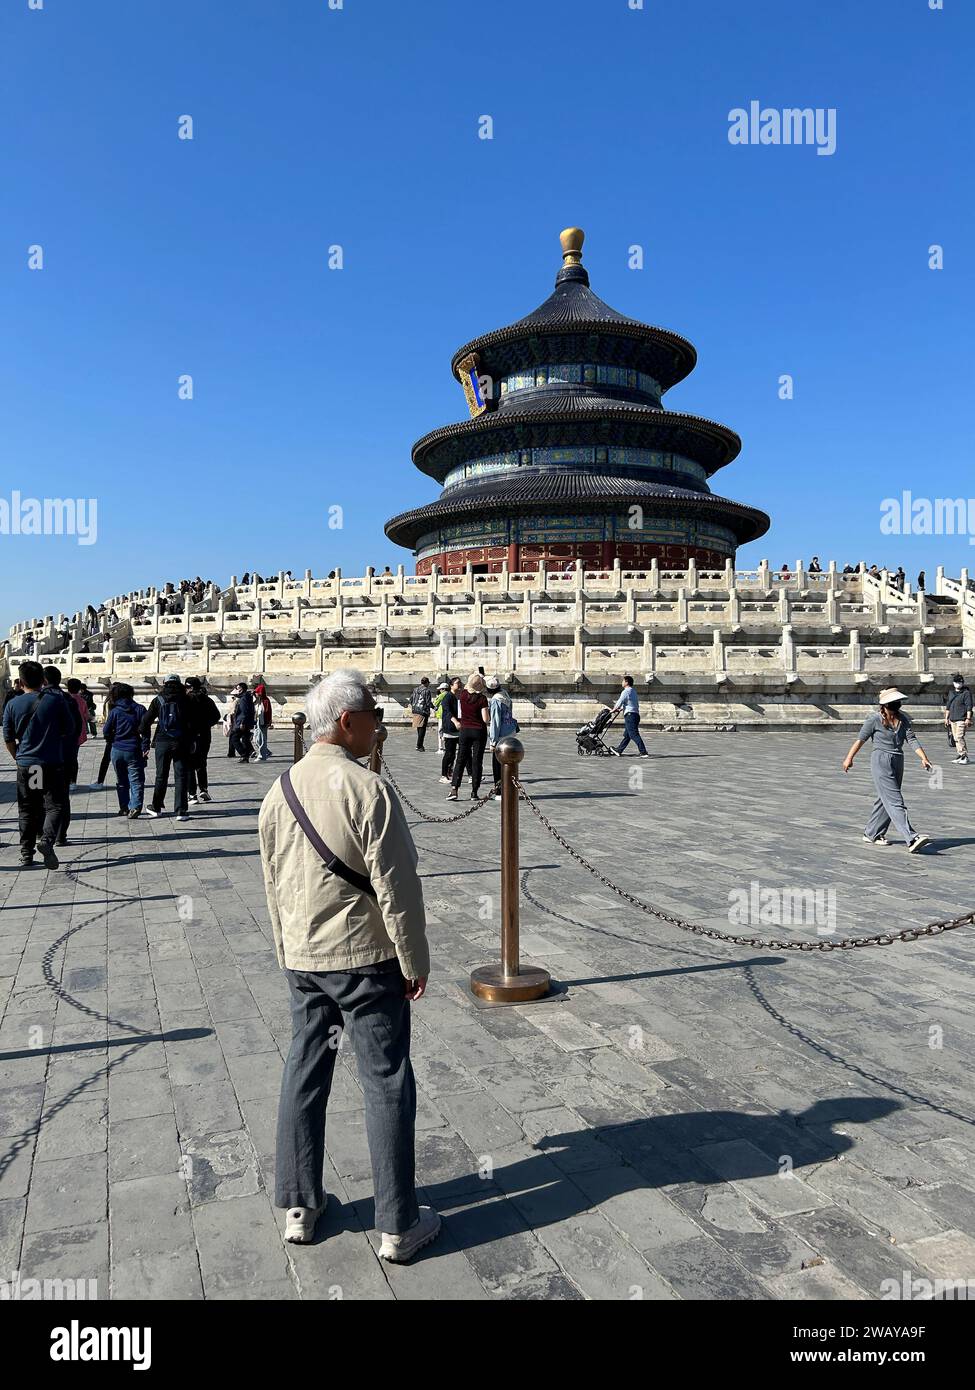 Pechino, Cina, Chaoyang, grande folla di turisti che visitano il monumento storico cinese, il Tempio del Paradiso e i monumenti storici Foto Stock